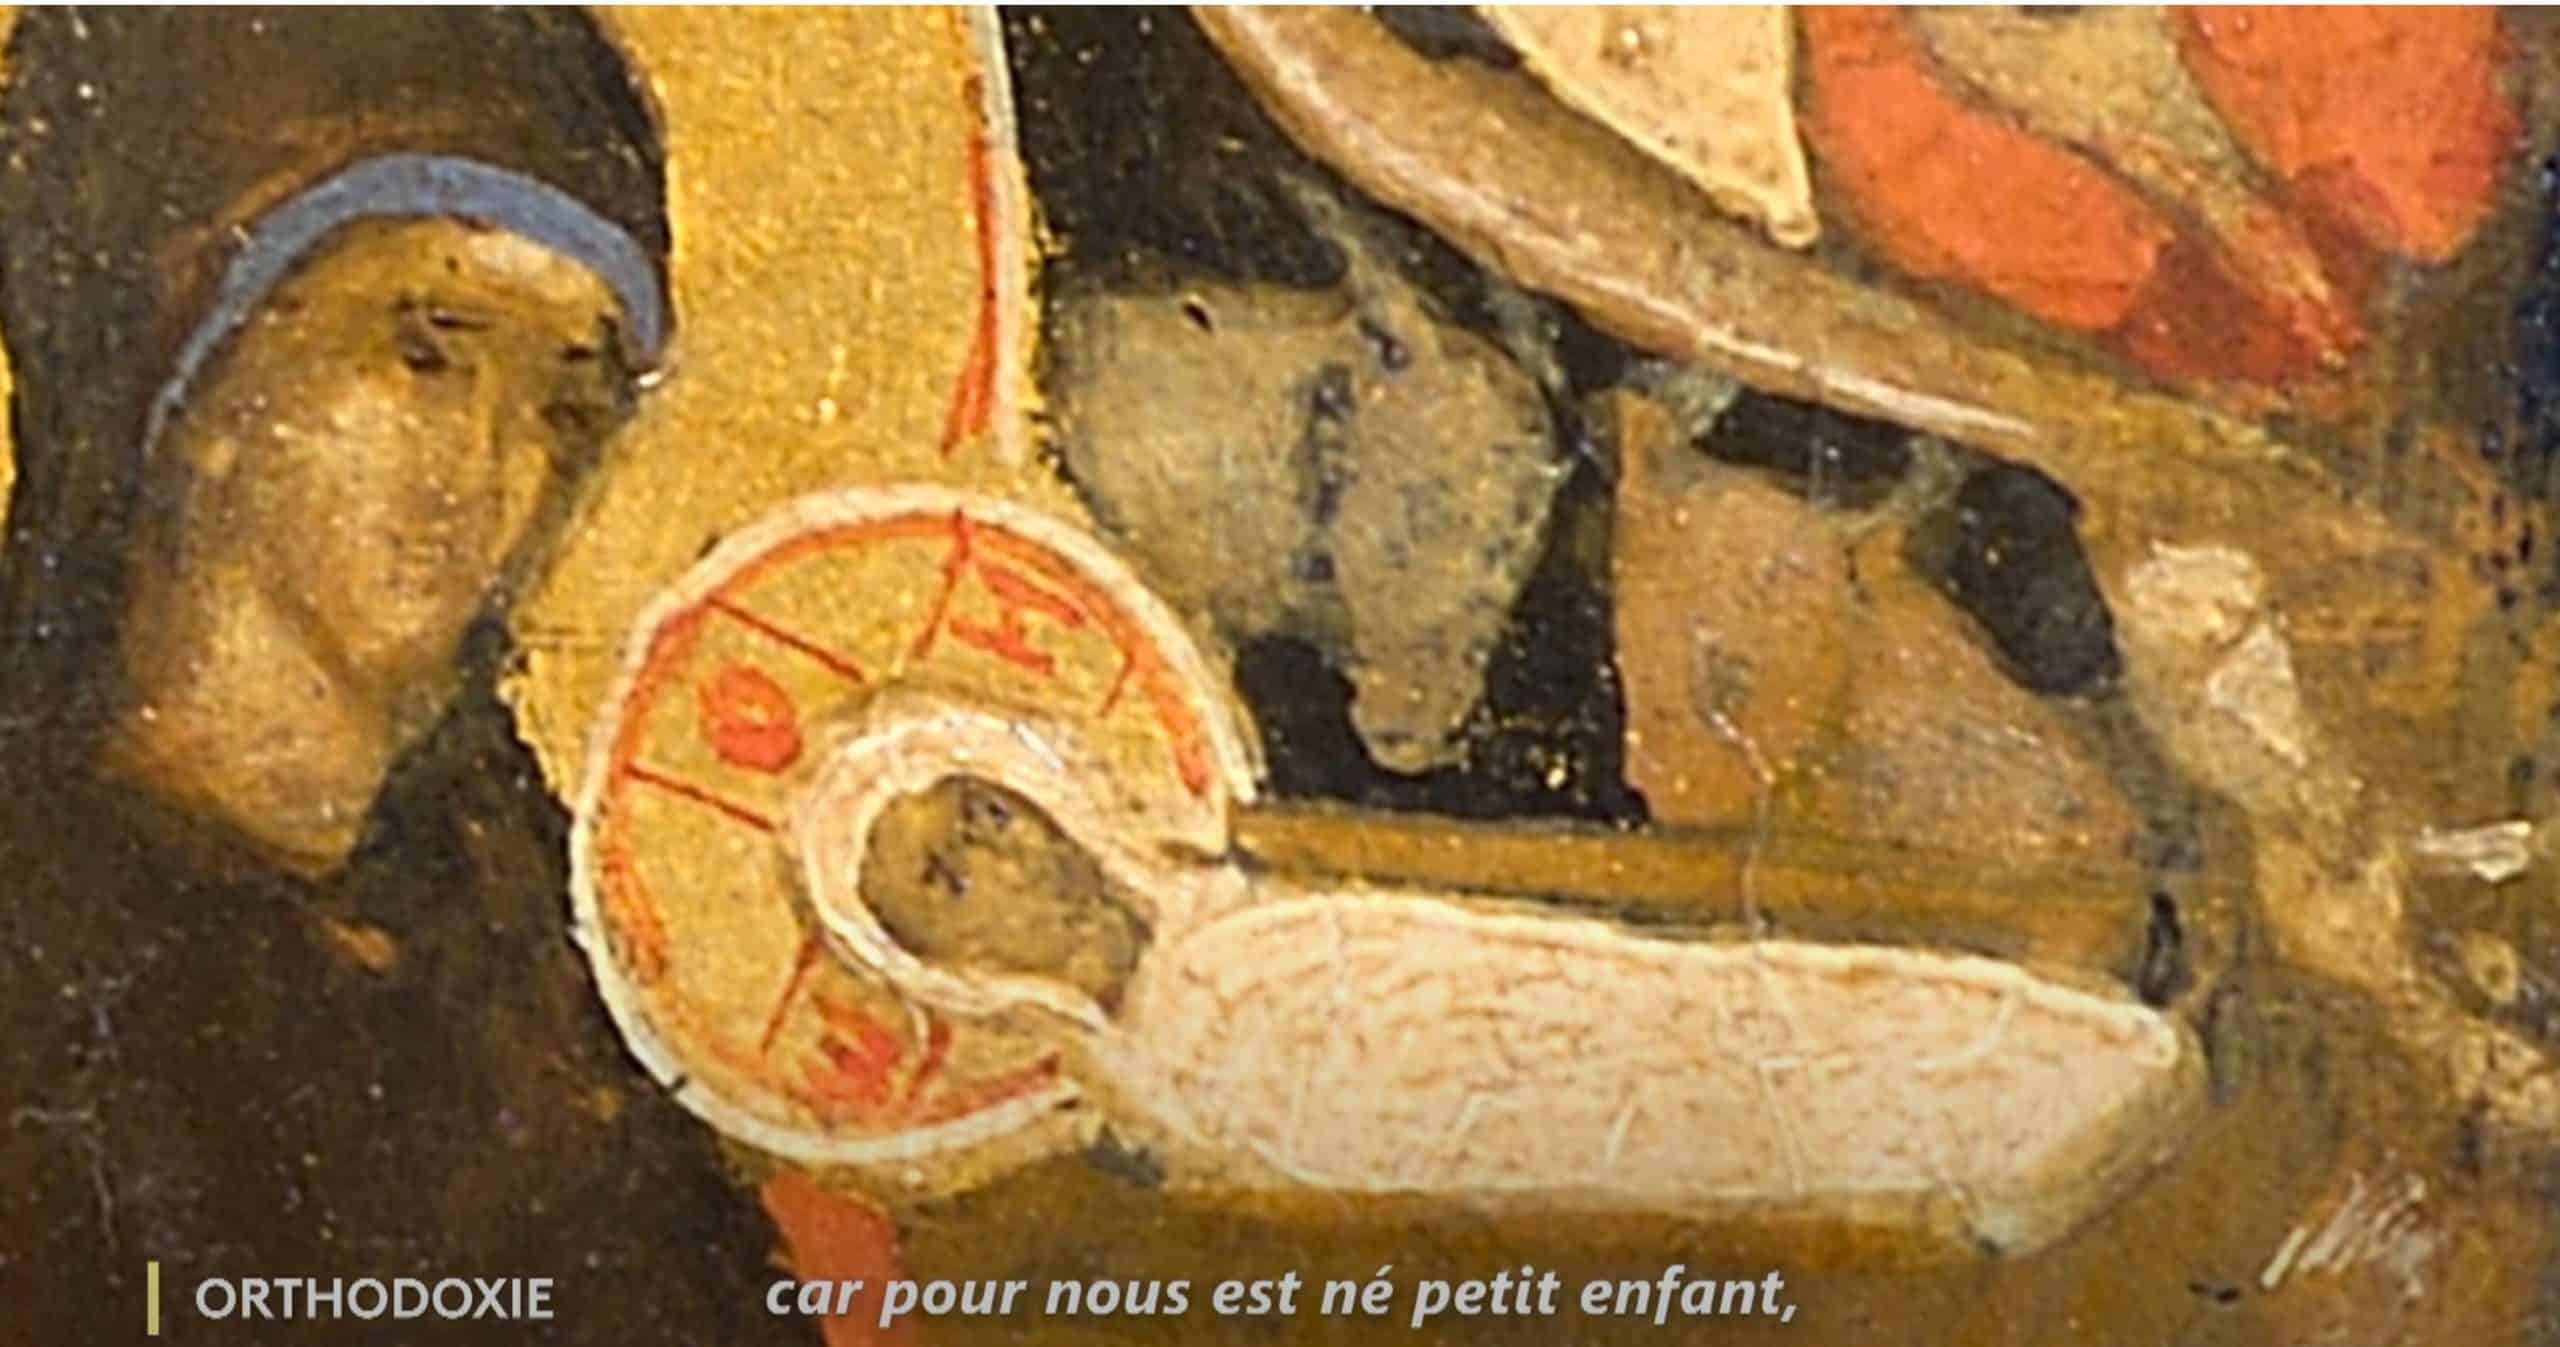 Bande-annonce Orthodoxie France 2 : « La Nativité du Christ » – dimanche 25 décembre à 9h30